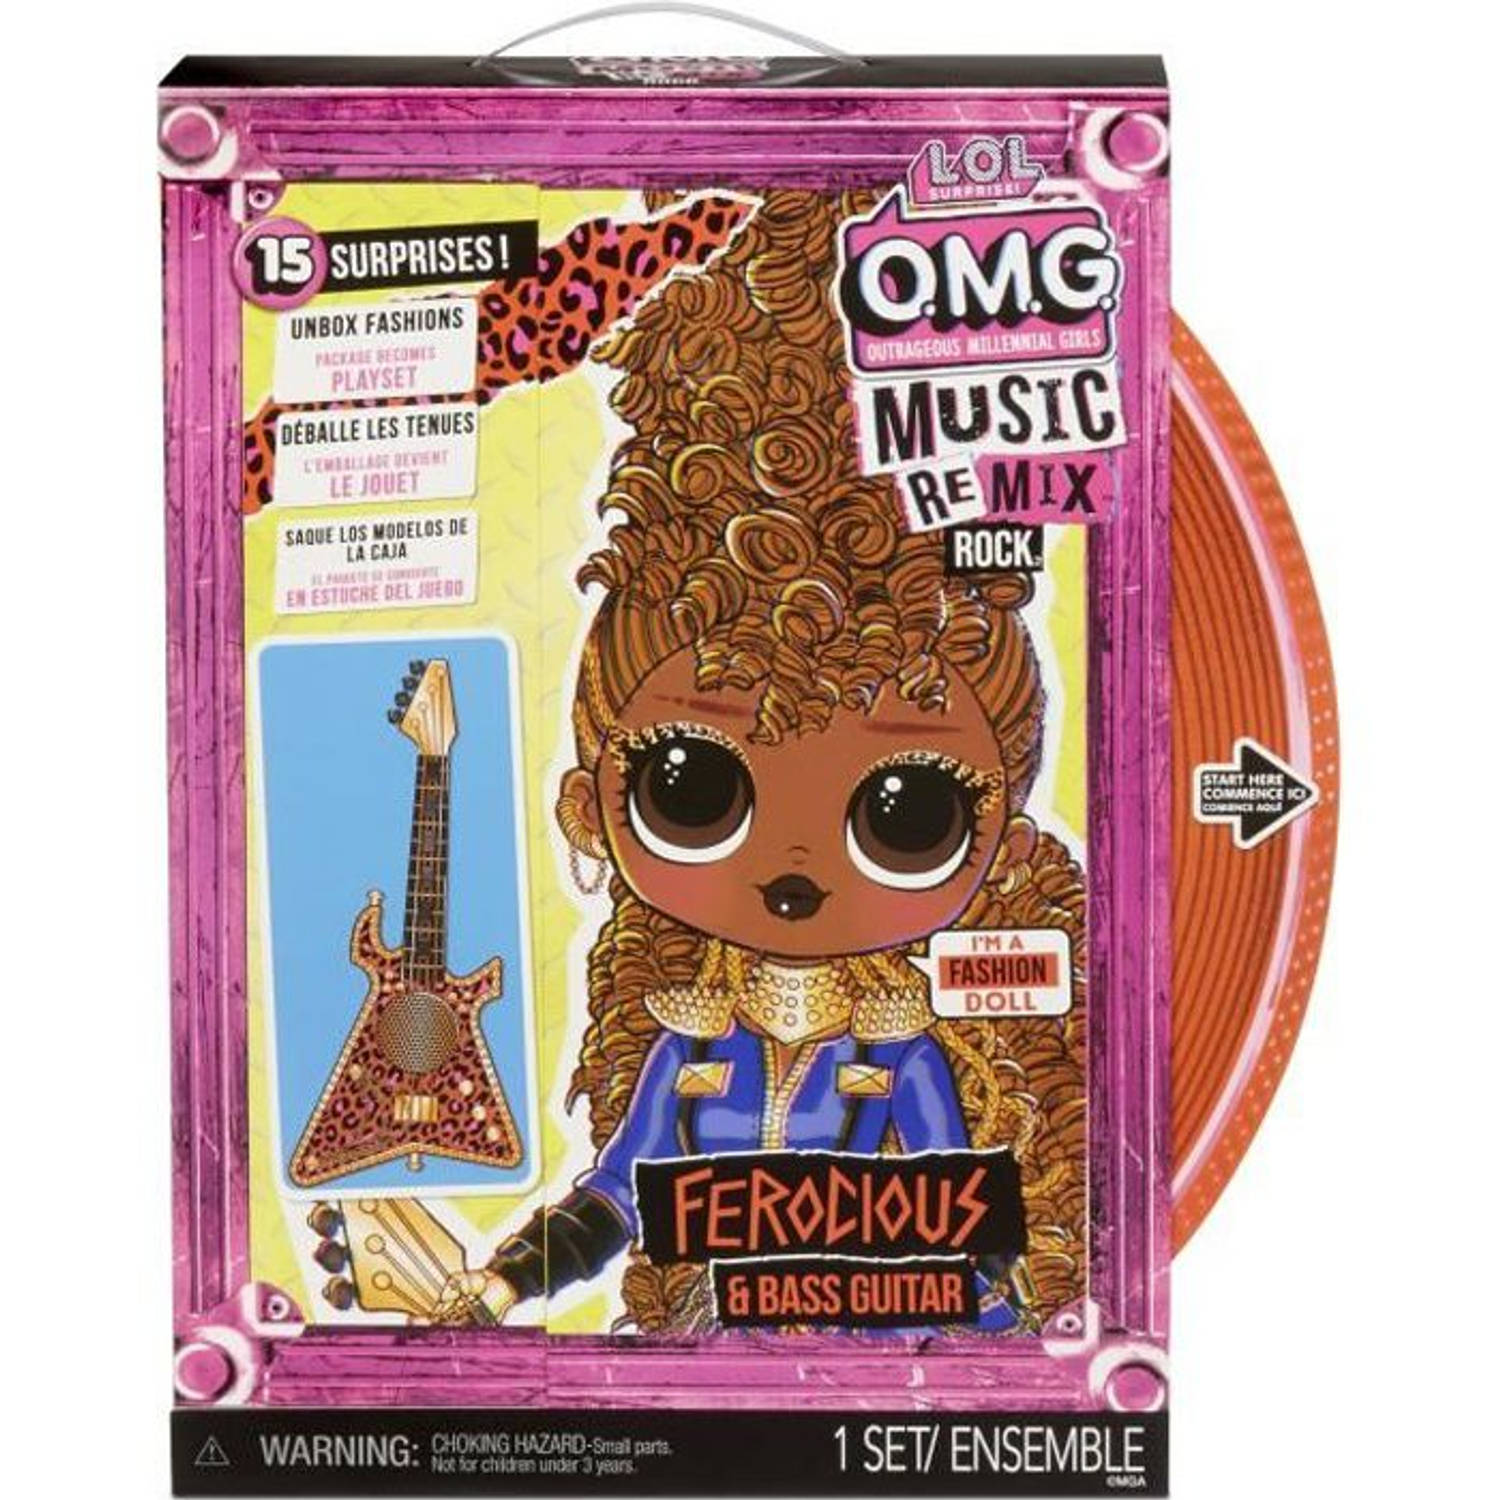 Lol Surprise Omg Remix Rock- Ferocious En Basgitaar Fashion Doll 24cm